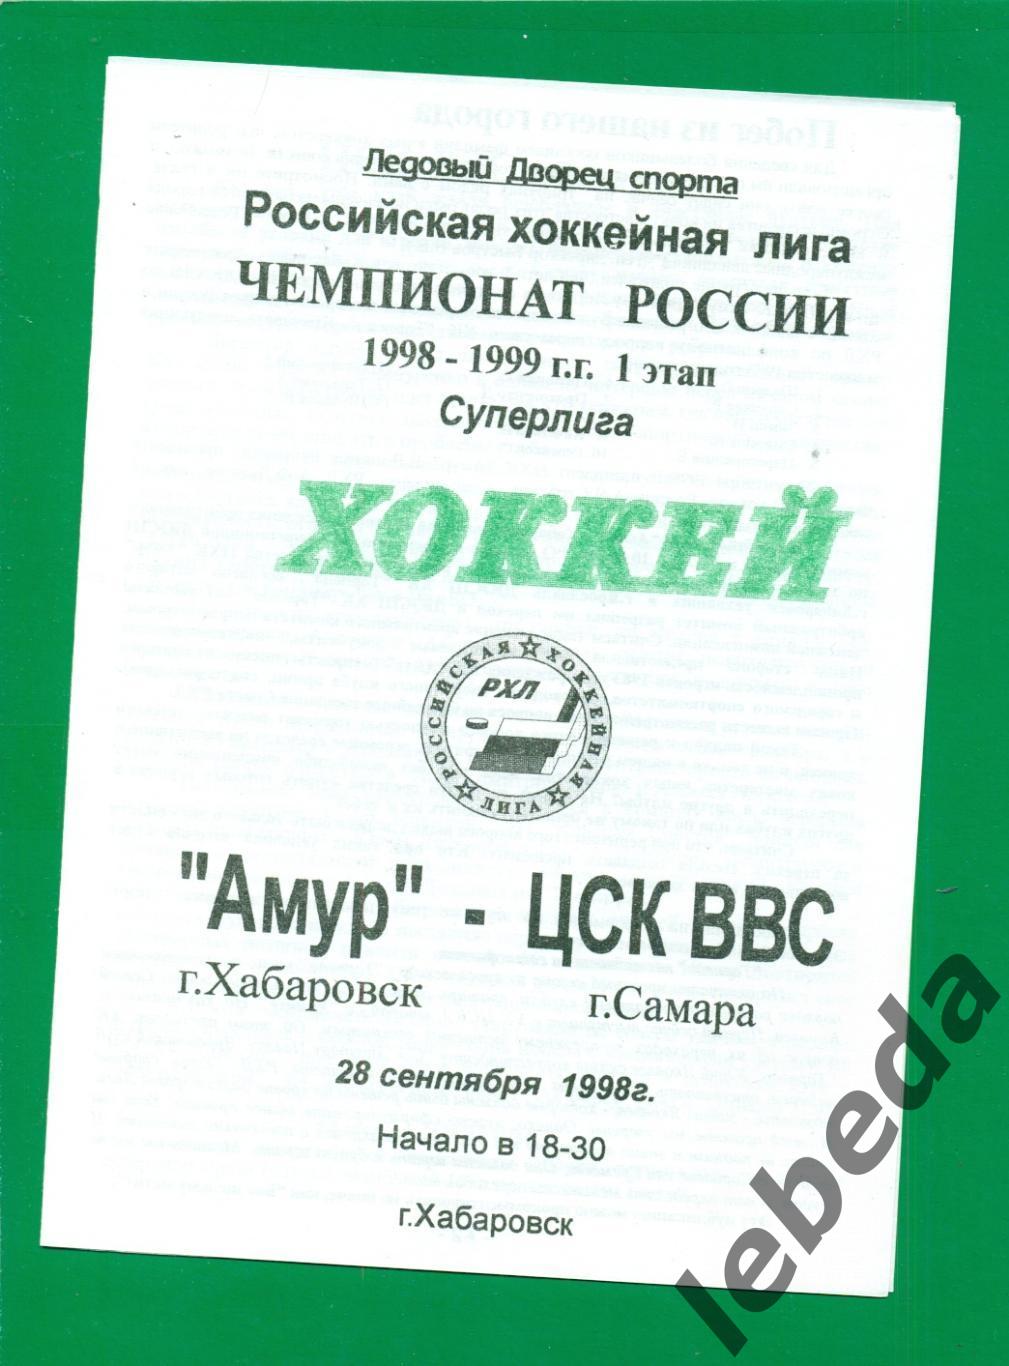 Амур Хабаровск - ЦСК ВВС Самара - 1998 / 1999 г. (28.09.1998.)